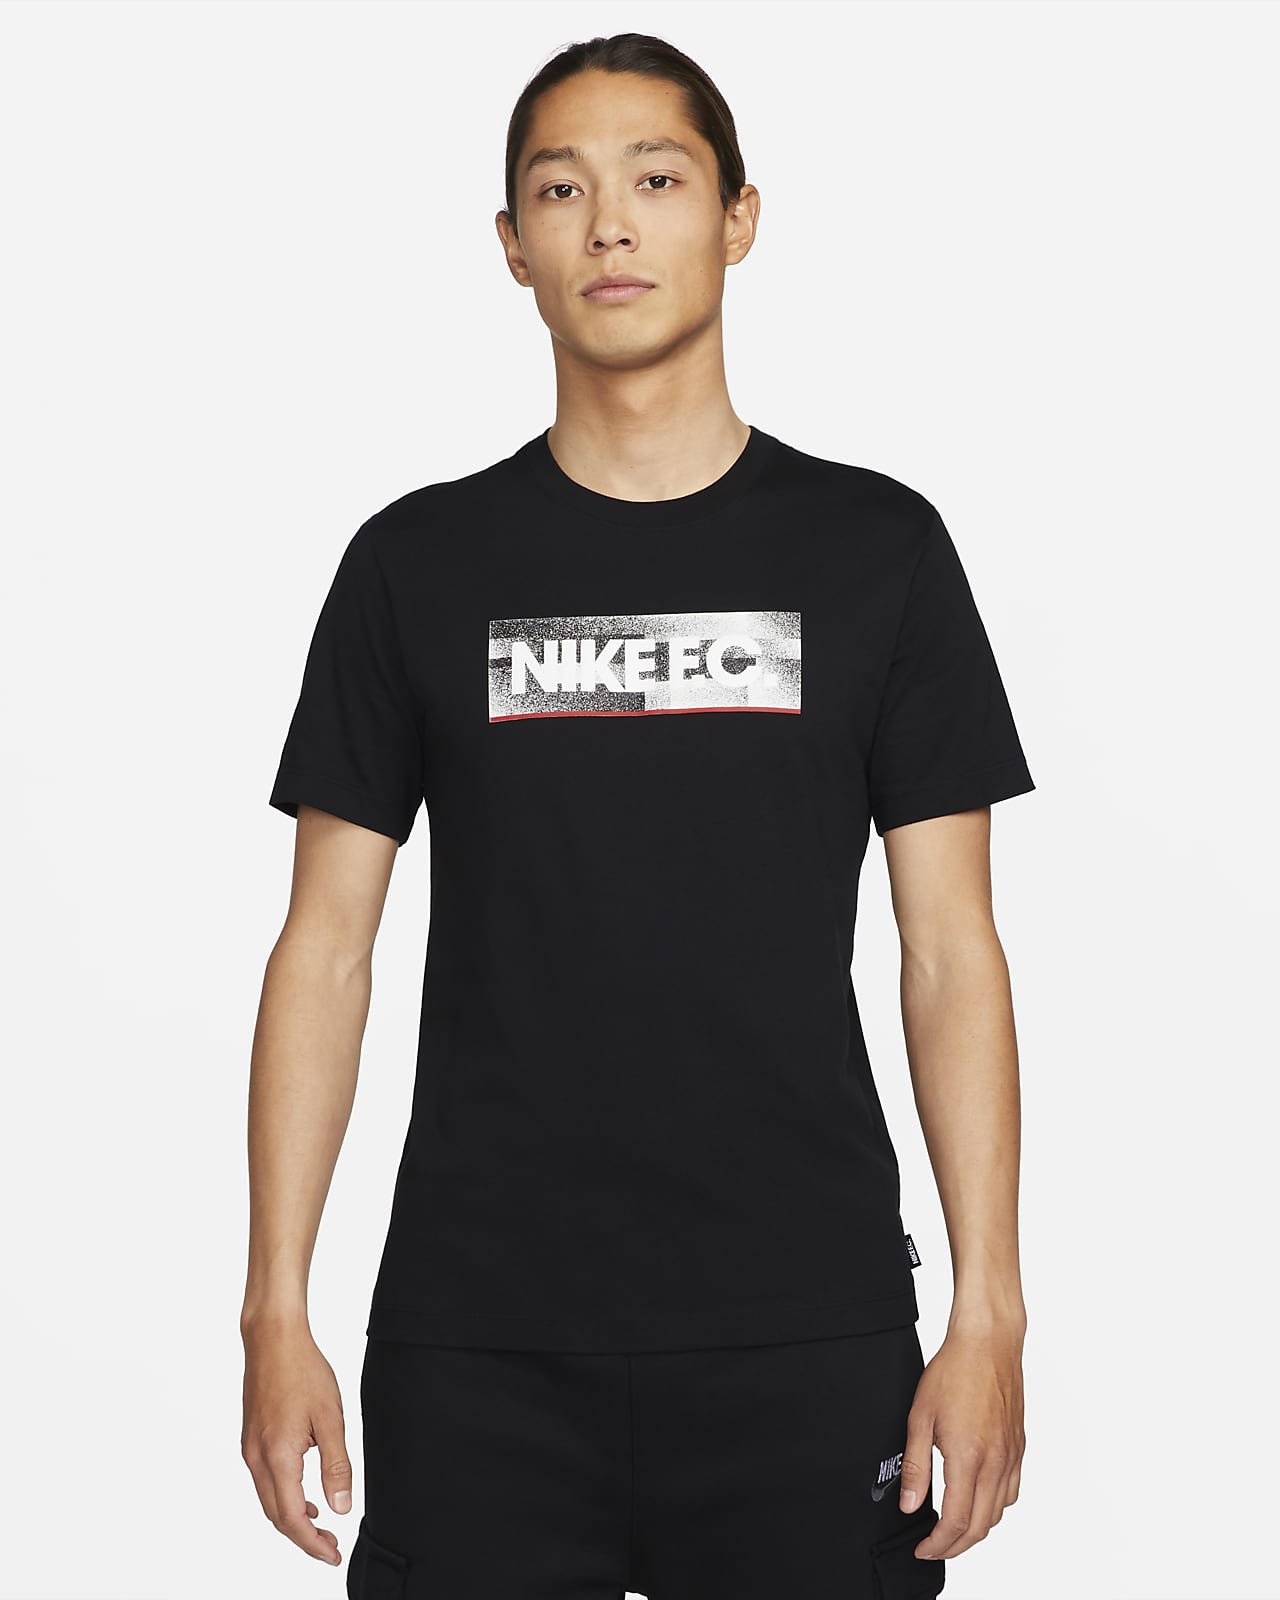 Nike公式 ナイキ F C メンズ Tシャツ オンラインストア 通販サイト